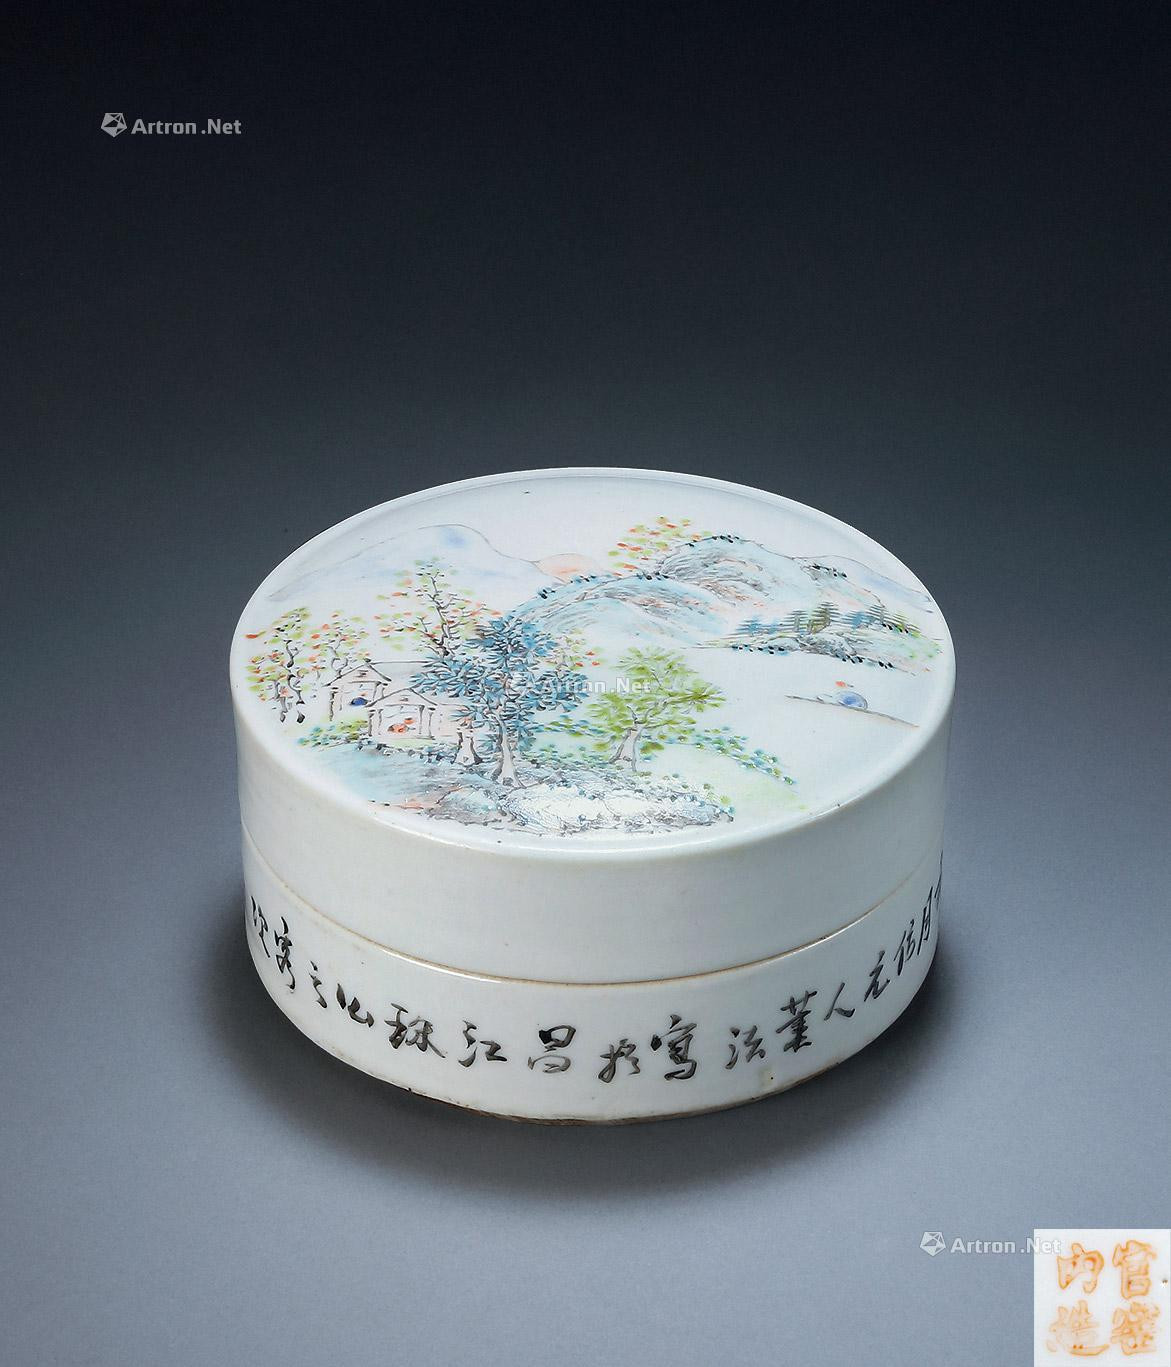 A QIAN JIANG CAI SEAL BOX MADE BY ZHOU ZI SHAN